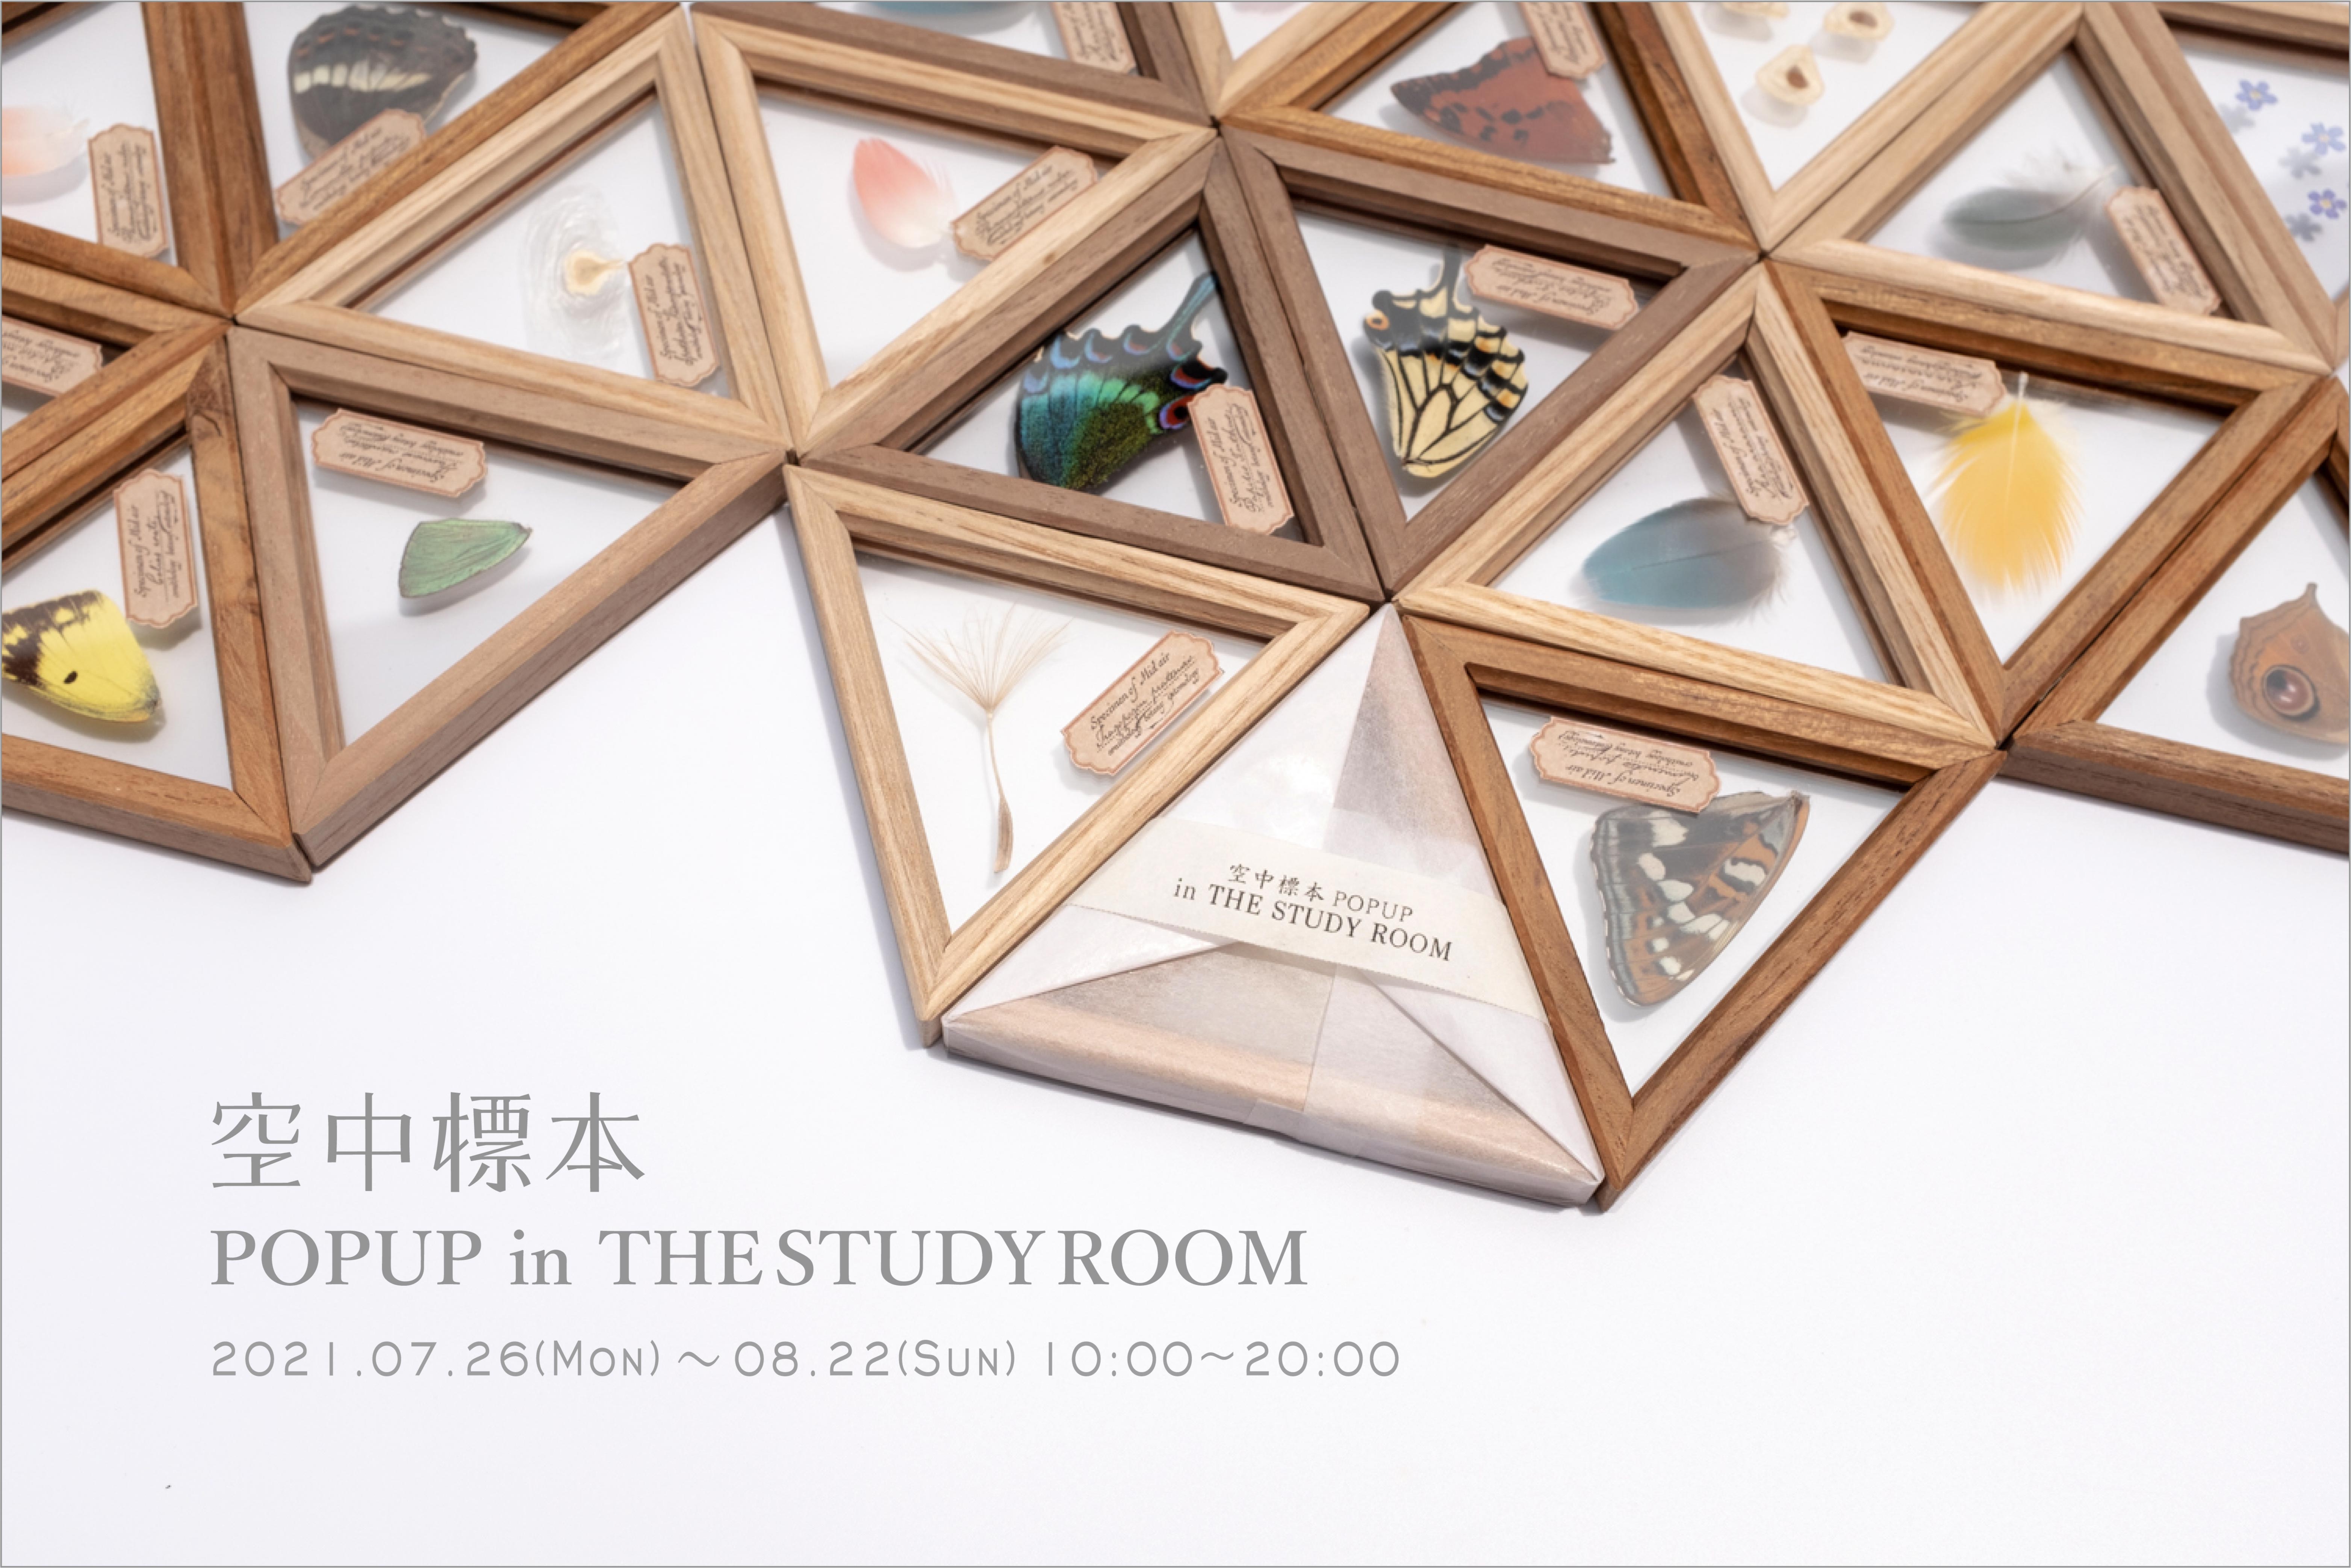 7月26日(月)〜8月22日(日)「空中標本 POPUP in THE STUDY ROOM」仙台